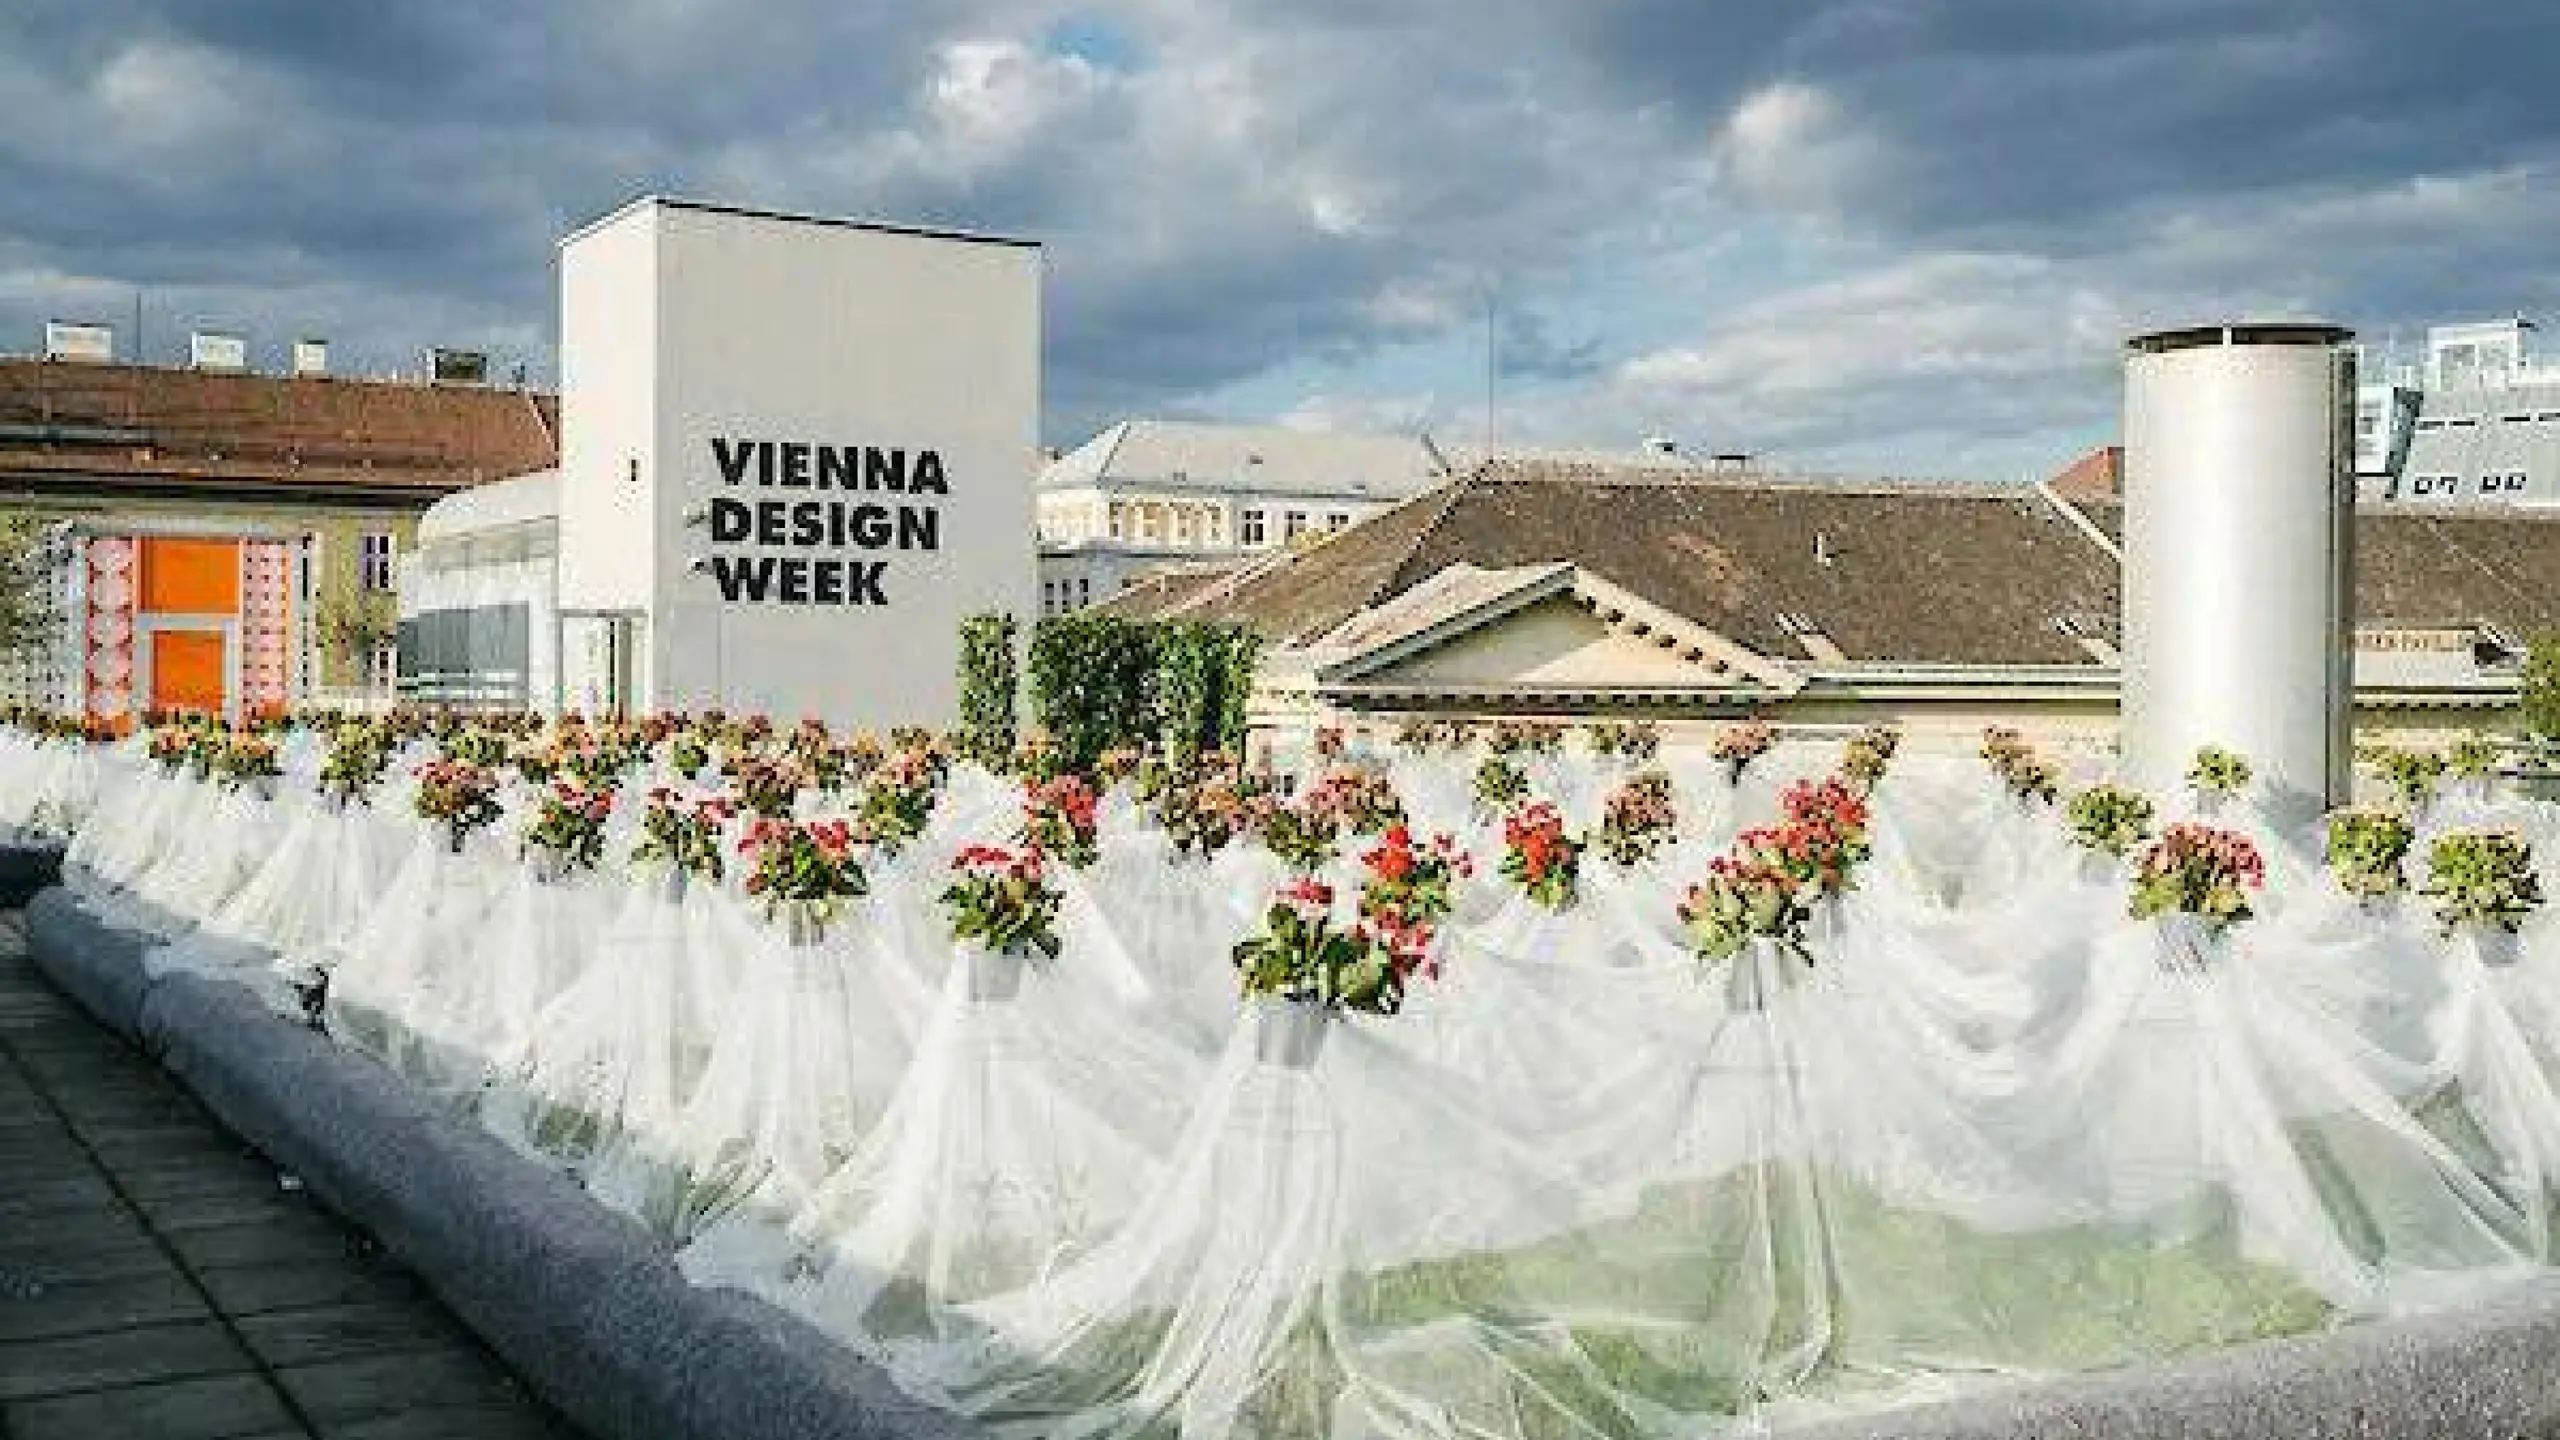 Vienna Design Week zeigt jährlich kreative Design-Ideen